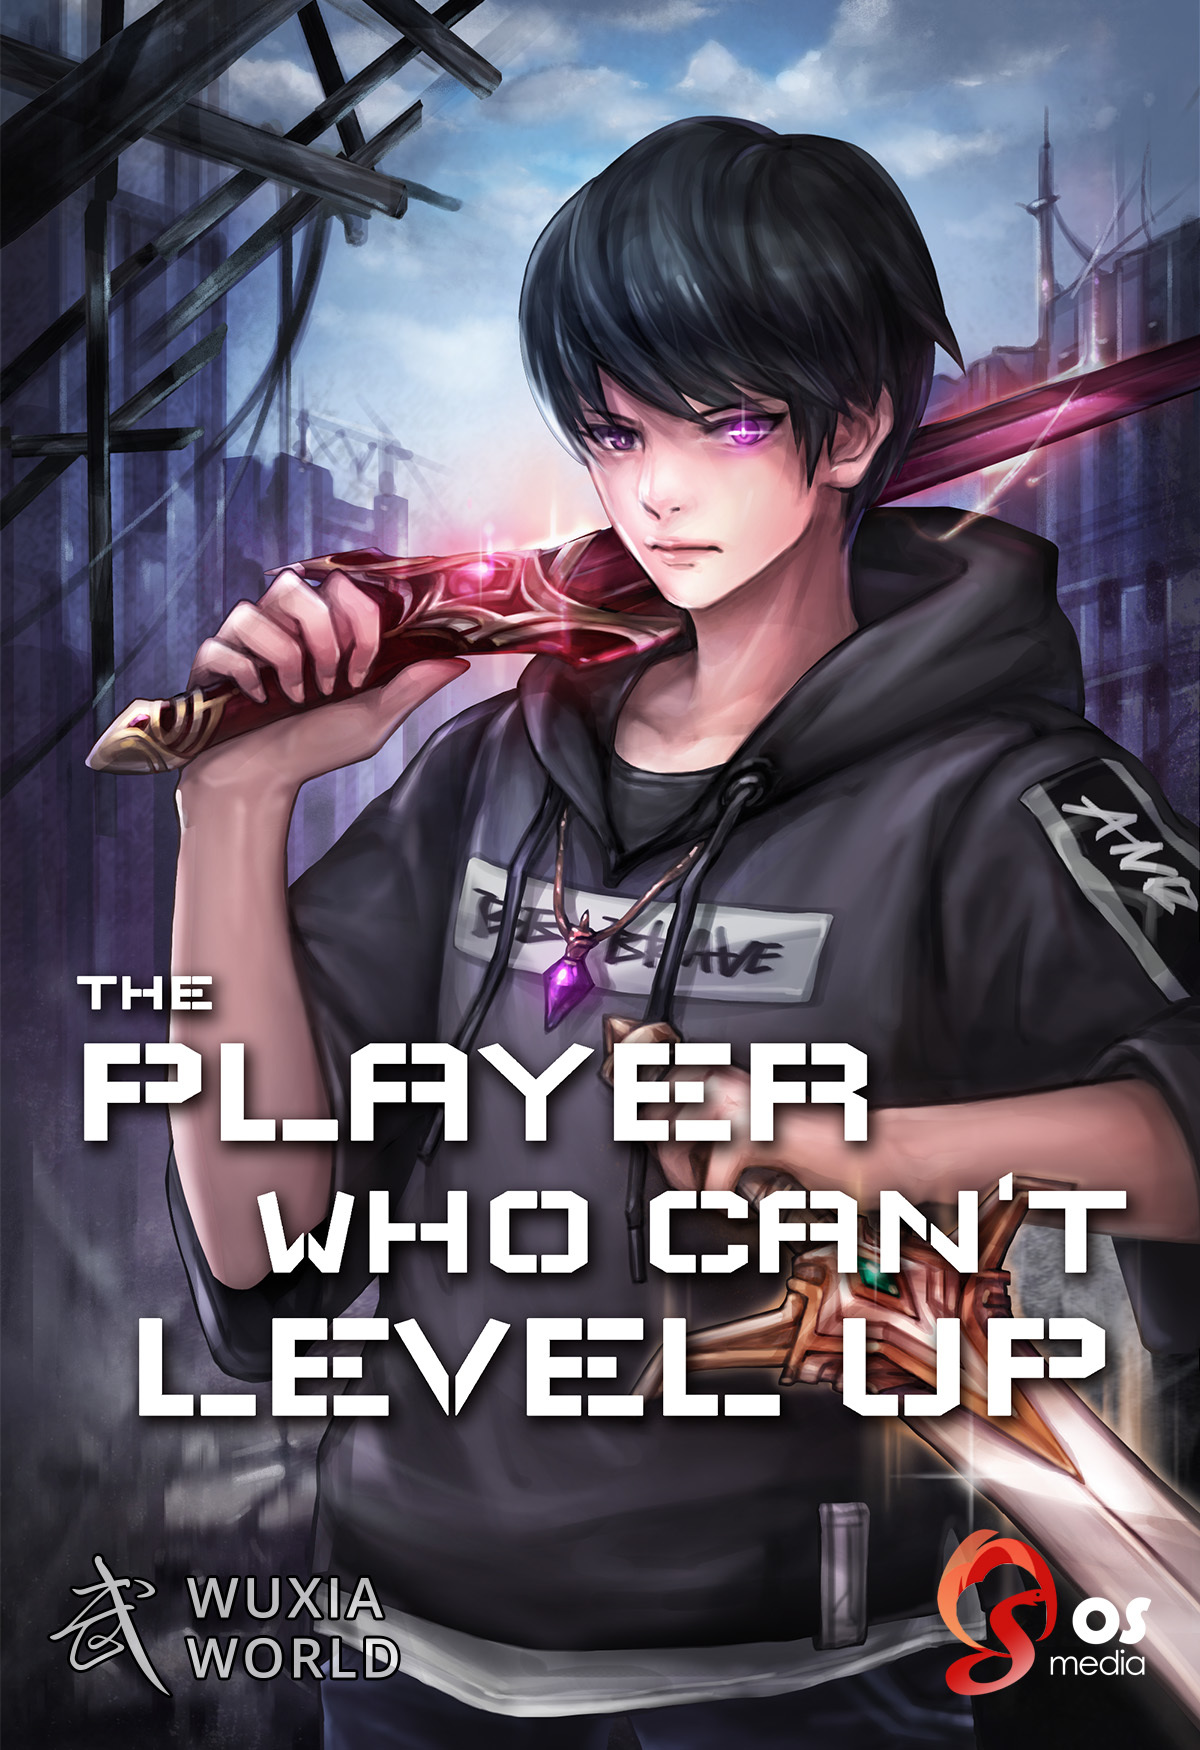 Манга игрок. Ранобэ игрок 1 уровня. Аниме Level 1 Player. Игрок первого уровня Манга. 1레벨 플레이어(novel).